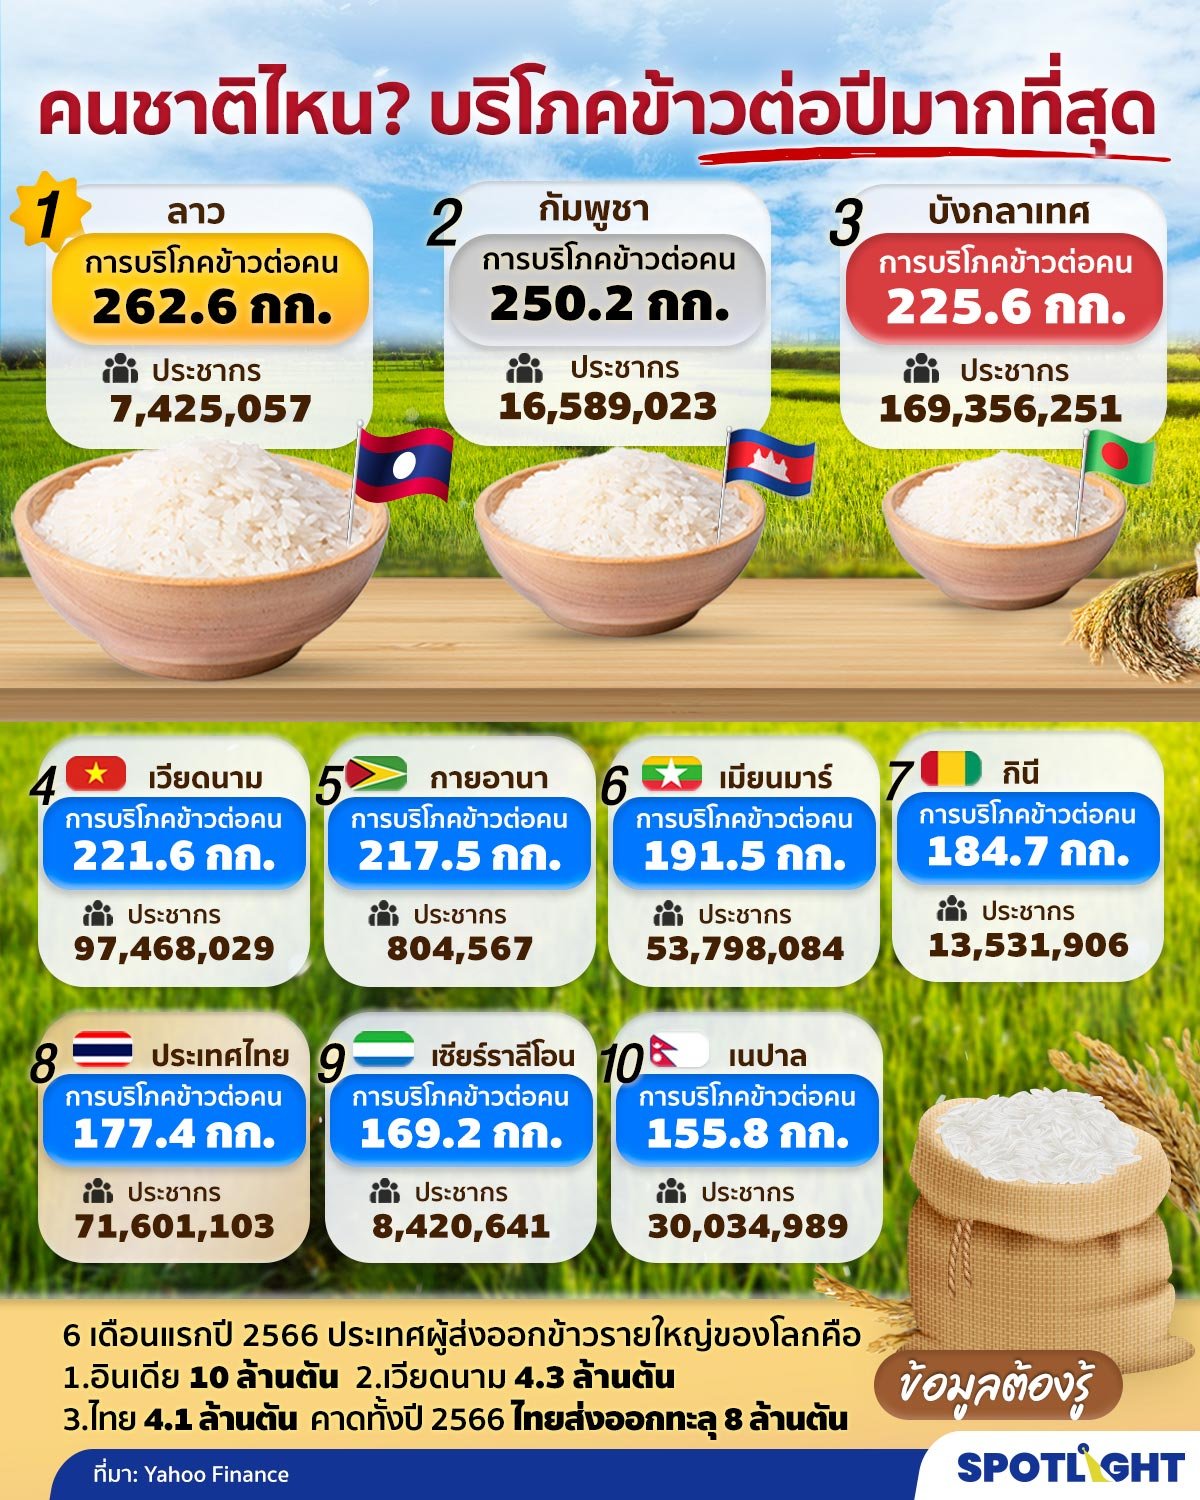 ประเทศที่บริโภคข้าวมากที่สุดในโลก 